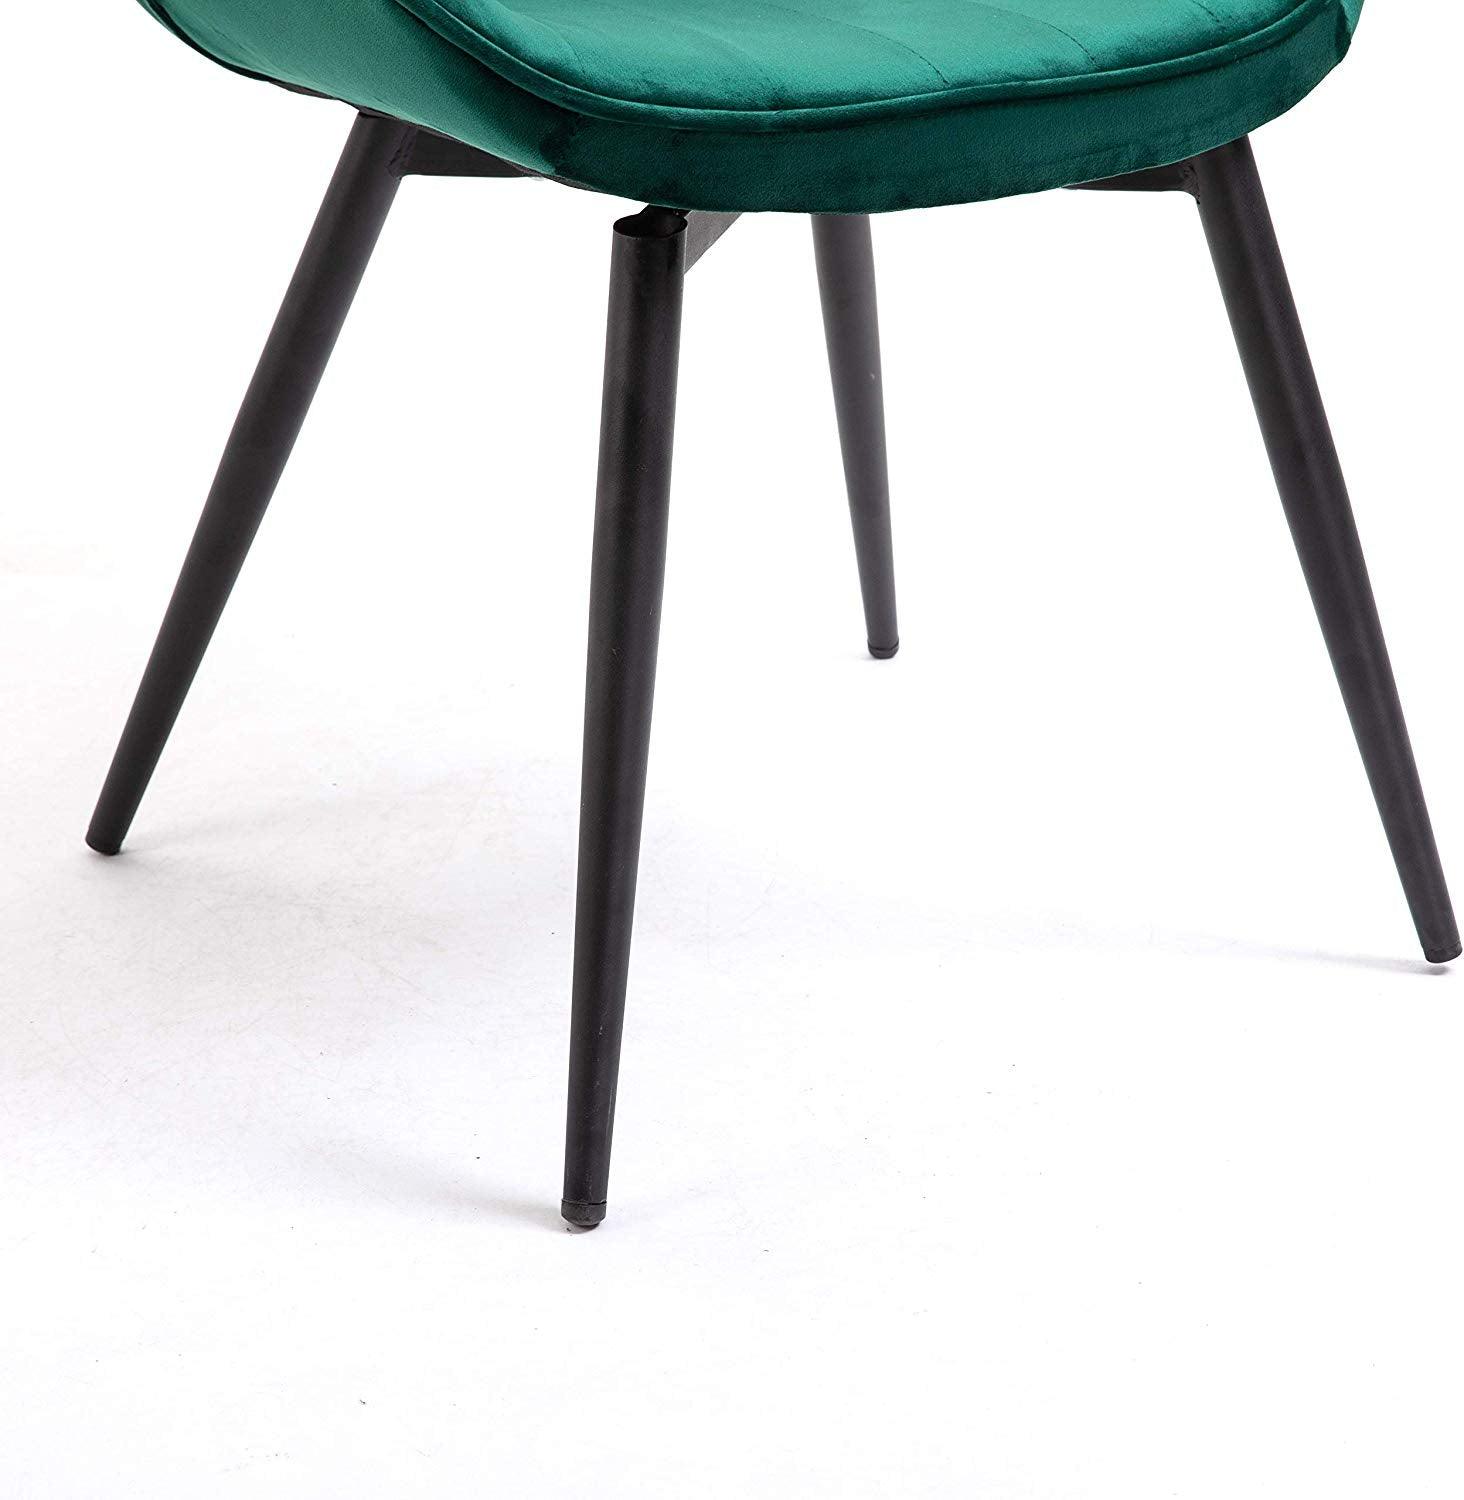 Cala Set of 2 Green Velvet Dining Chairs